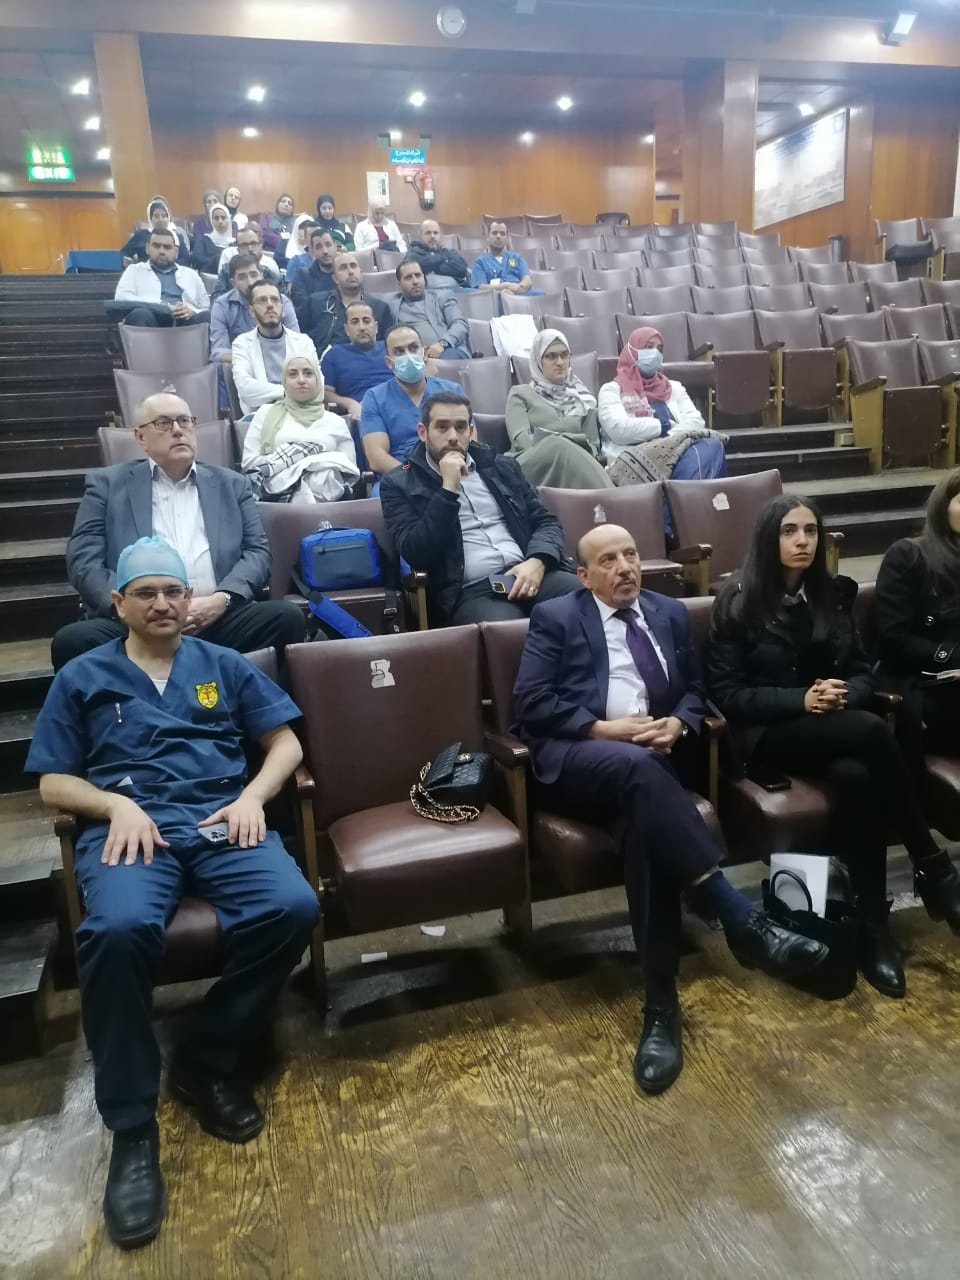 محاضرة تثقيفية حول قصور عضلة القلب في مستشفى الجامعة الأردنية 